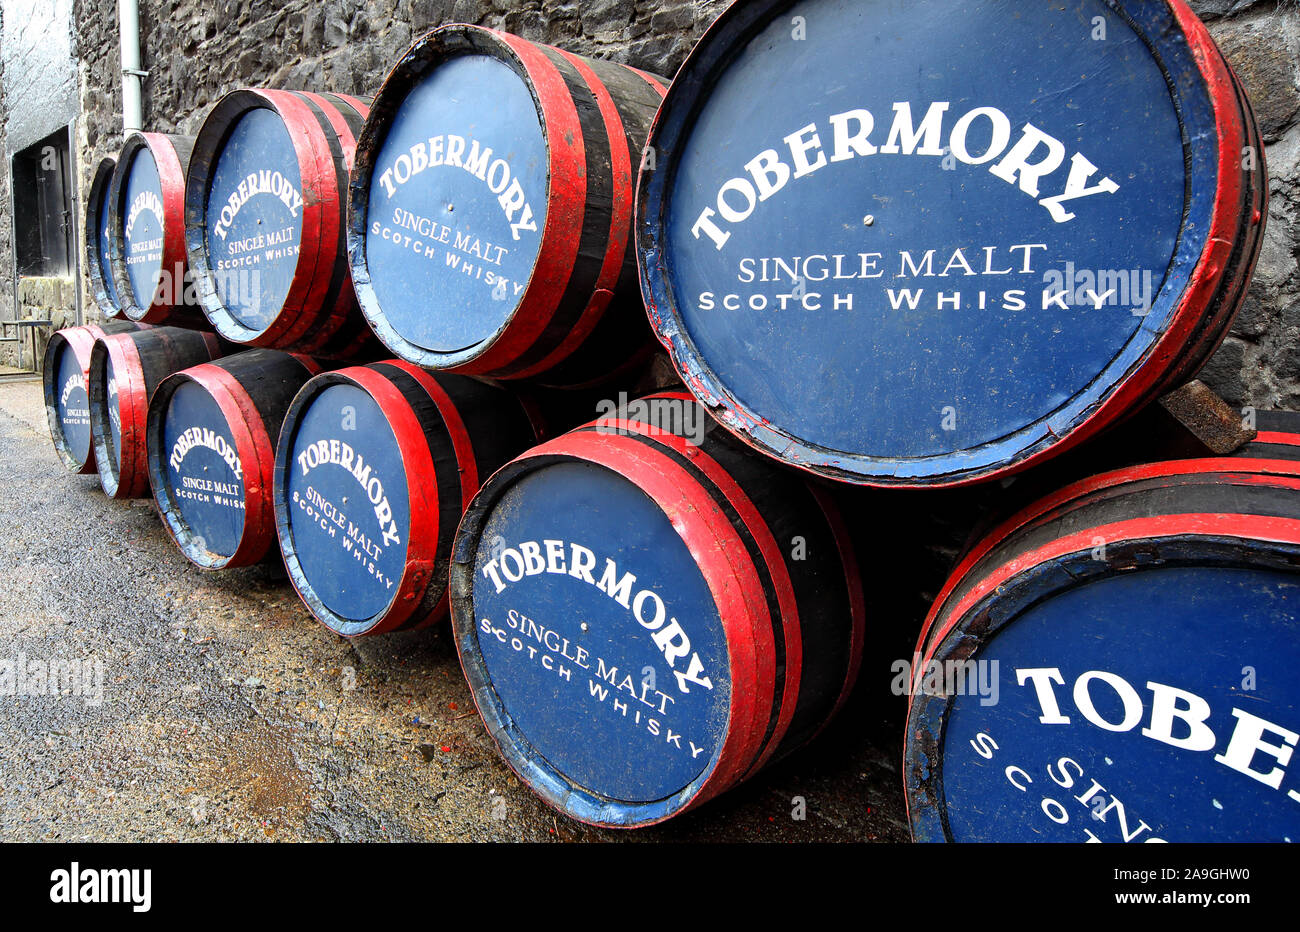 Tobermory Ledaig, Single Malt Scotch Whisky de barils dans une distillerie yard, Ile de Mull, dans l'ouest de l'Écosse, Royaume-Uni Banque D'Images